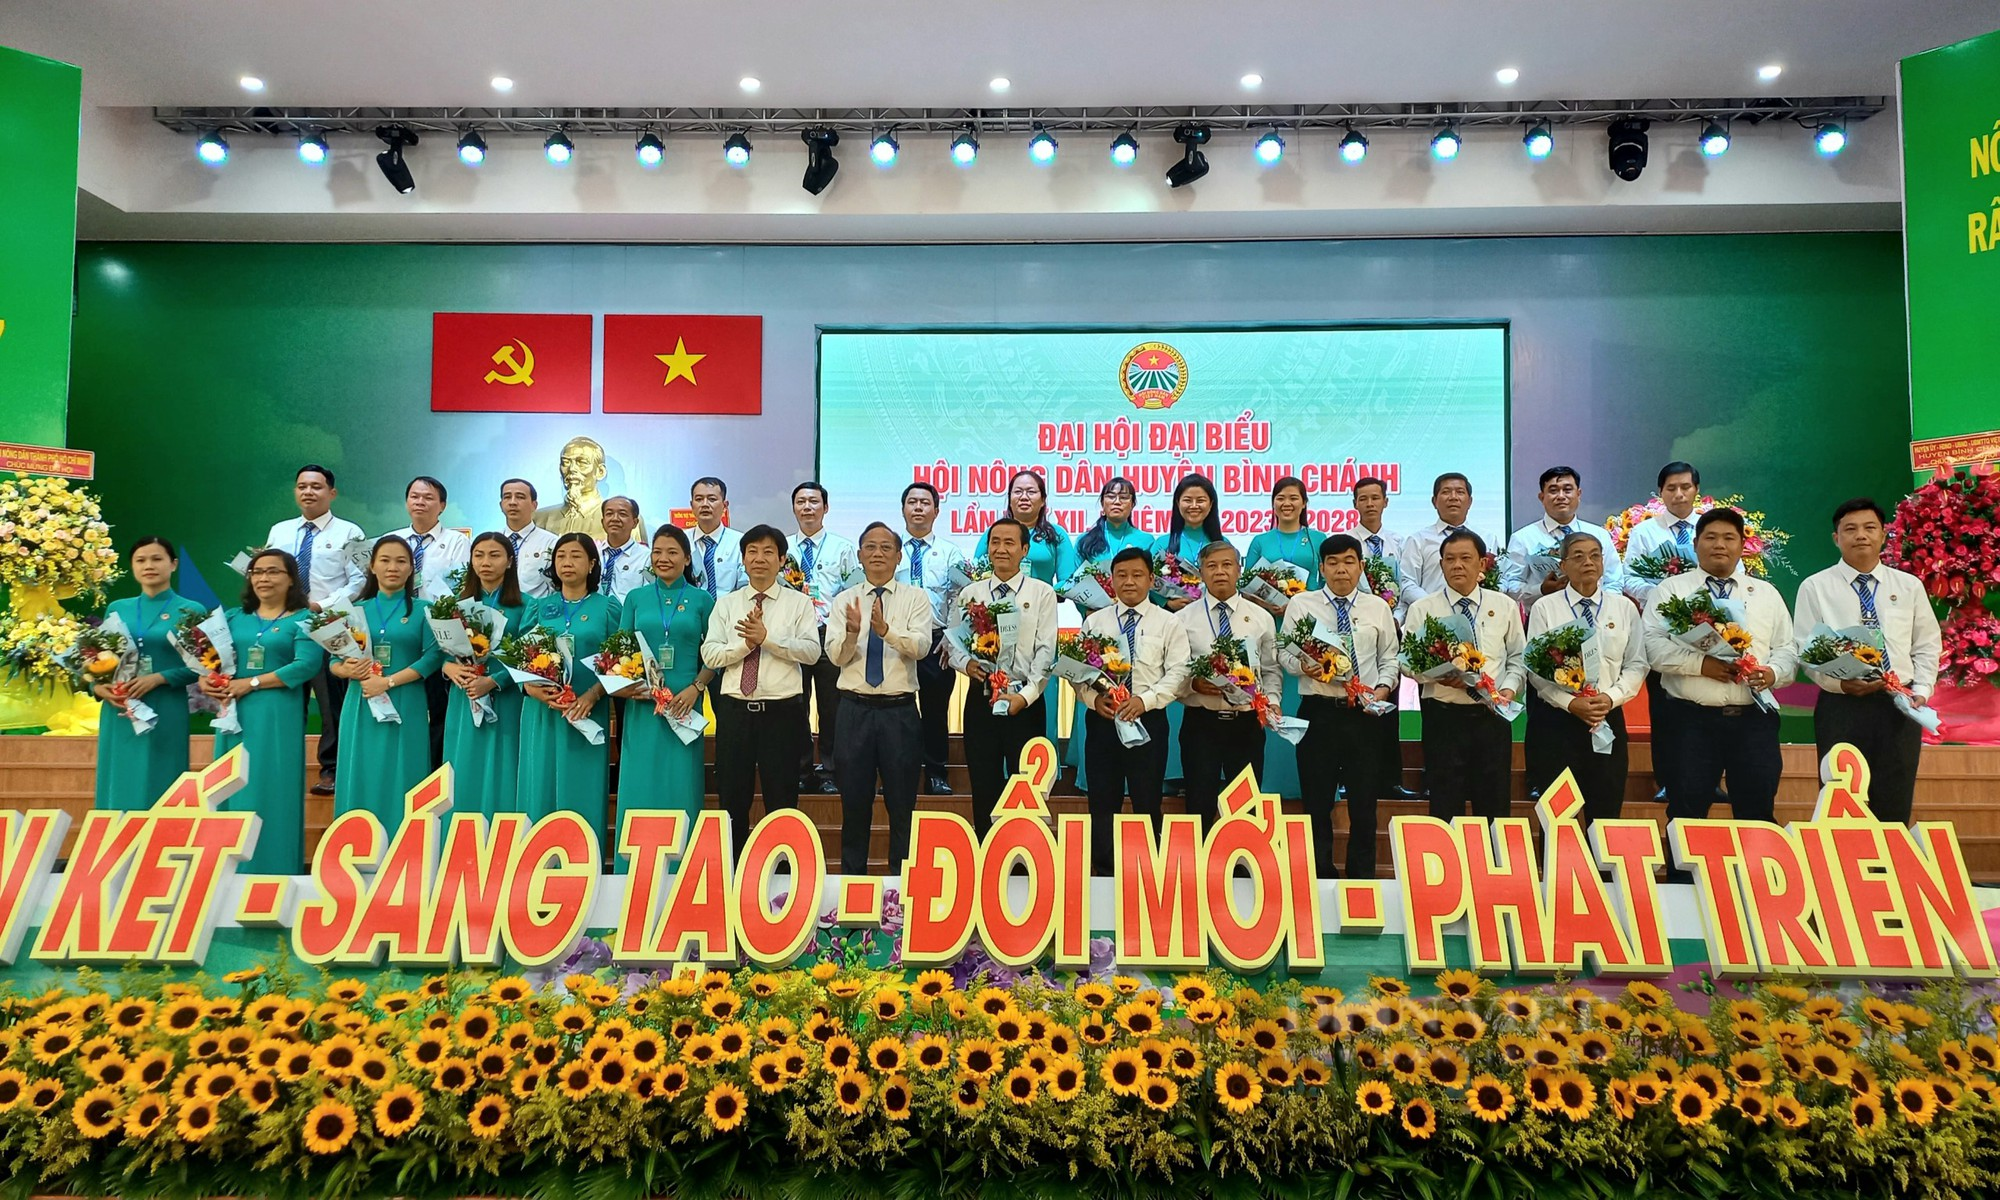 Đại hội Đại biểu Hội Nông dân huyện Bình Chánh (TP.HCM): Ông Nguyễn Thanh Bạch tái cử chức chủ tịch  - Ảnh 1.